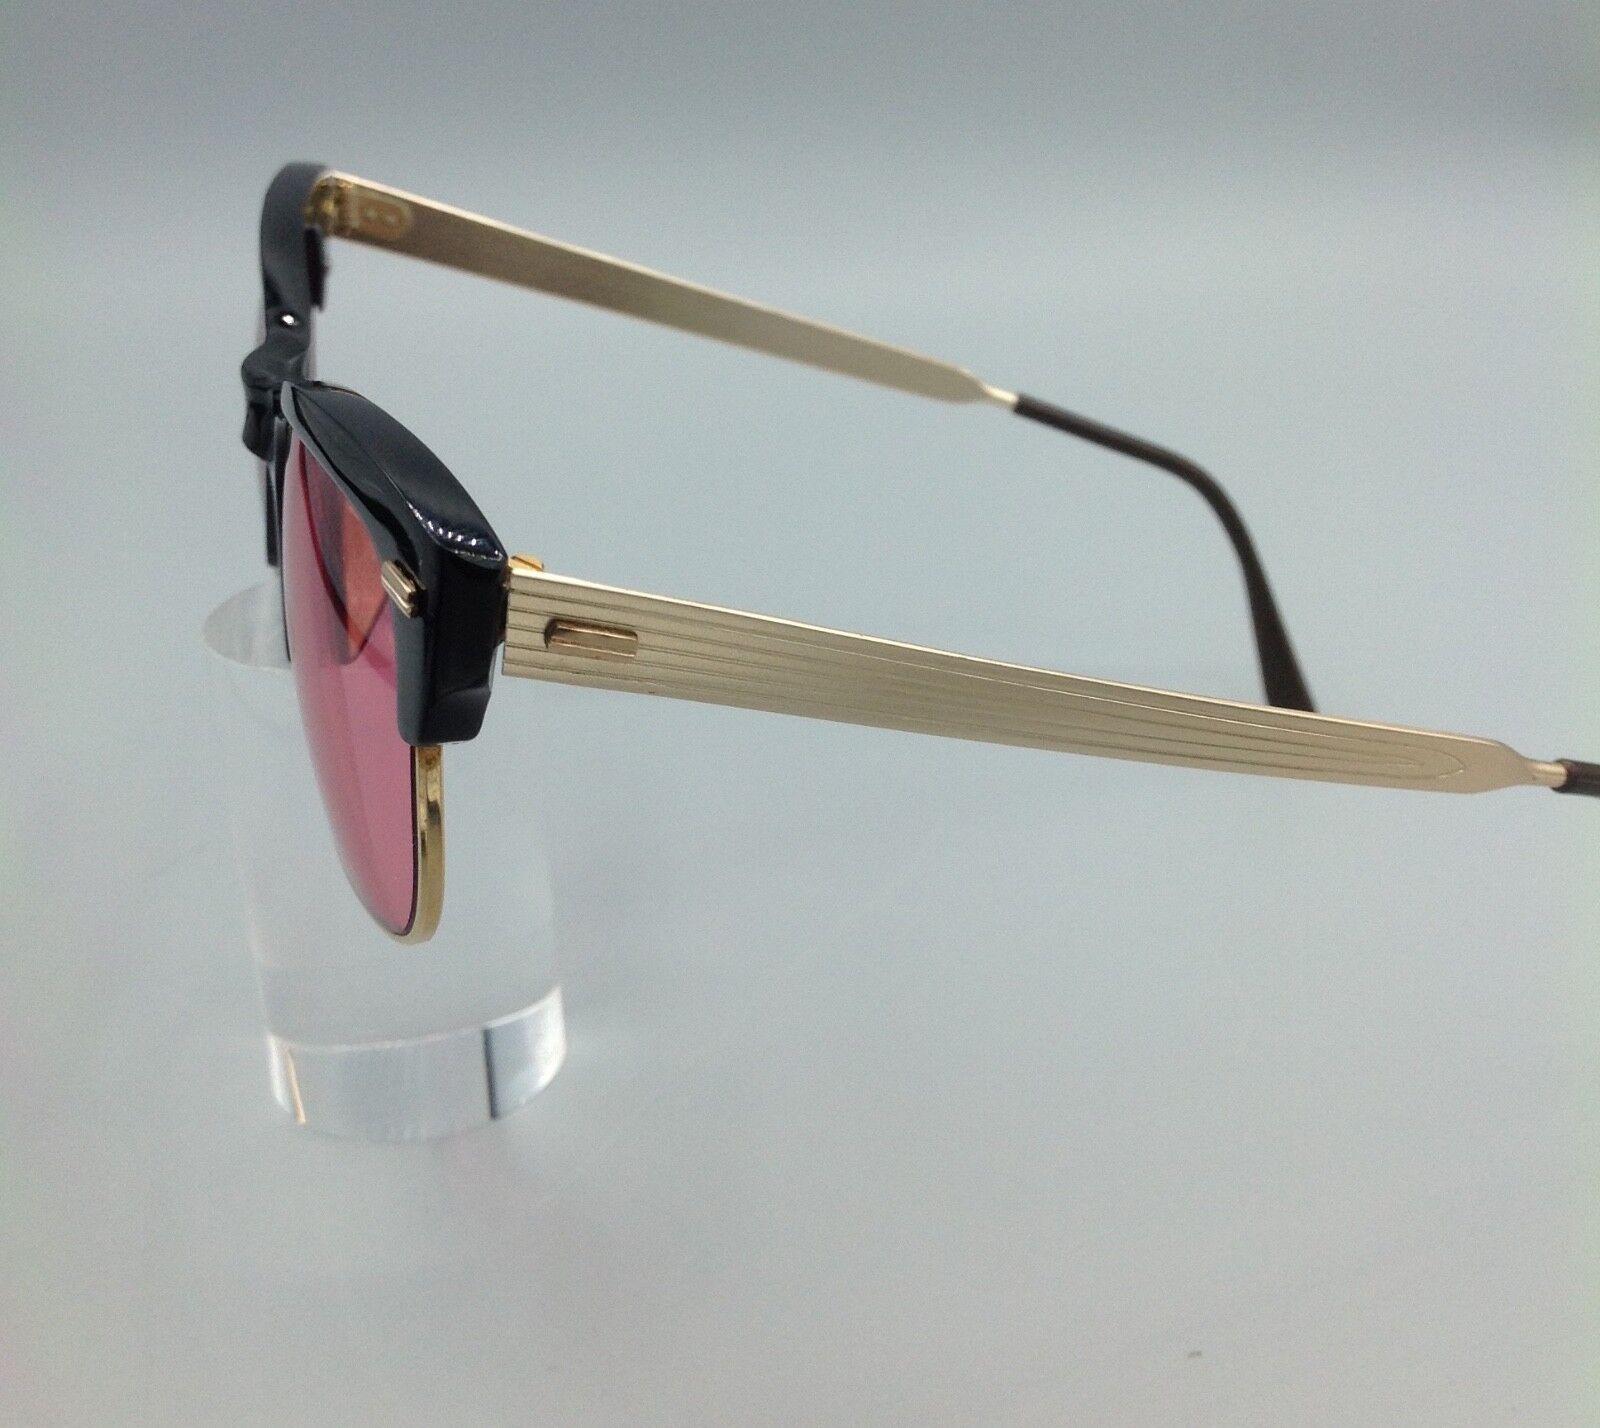 Vintage occhiale da sole lente red rose lens sunglasses sonnenbrillen 50s